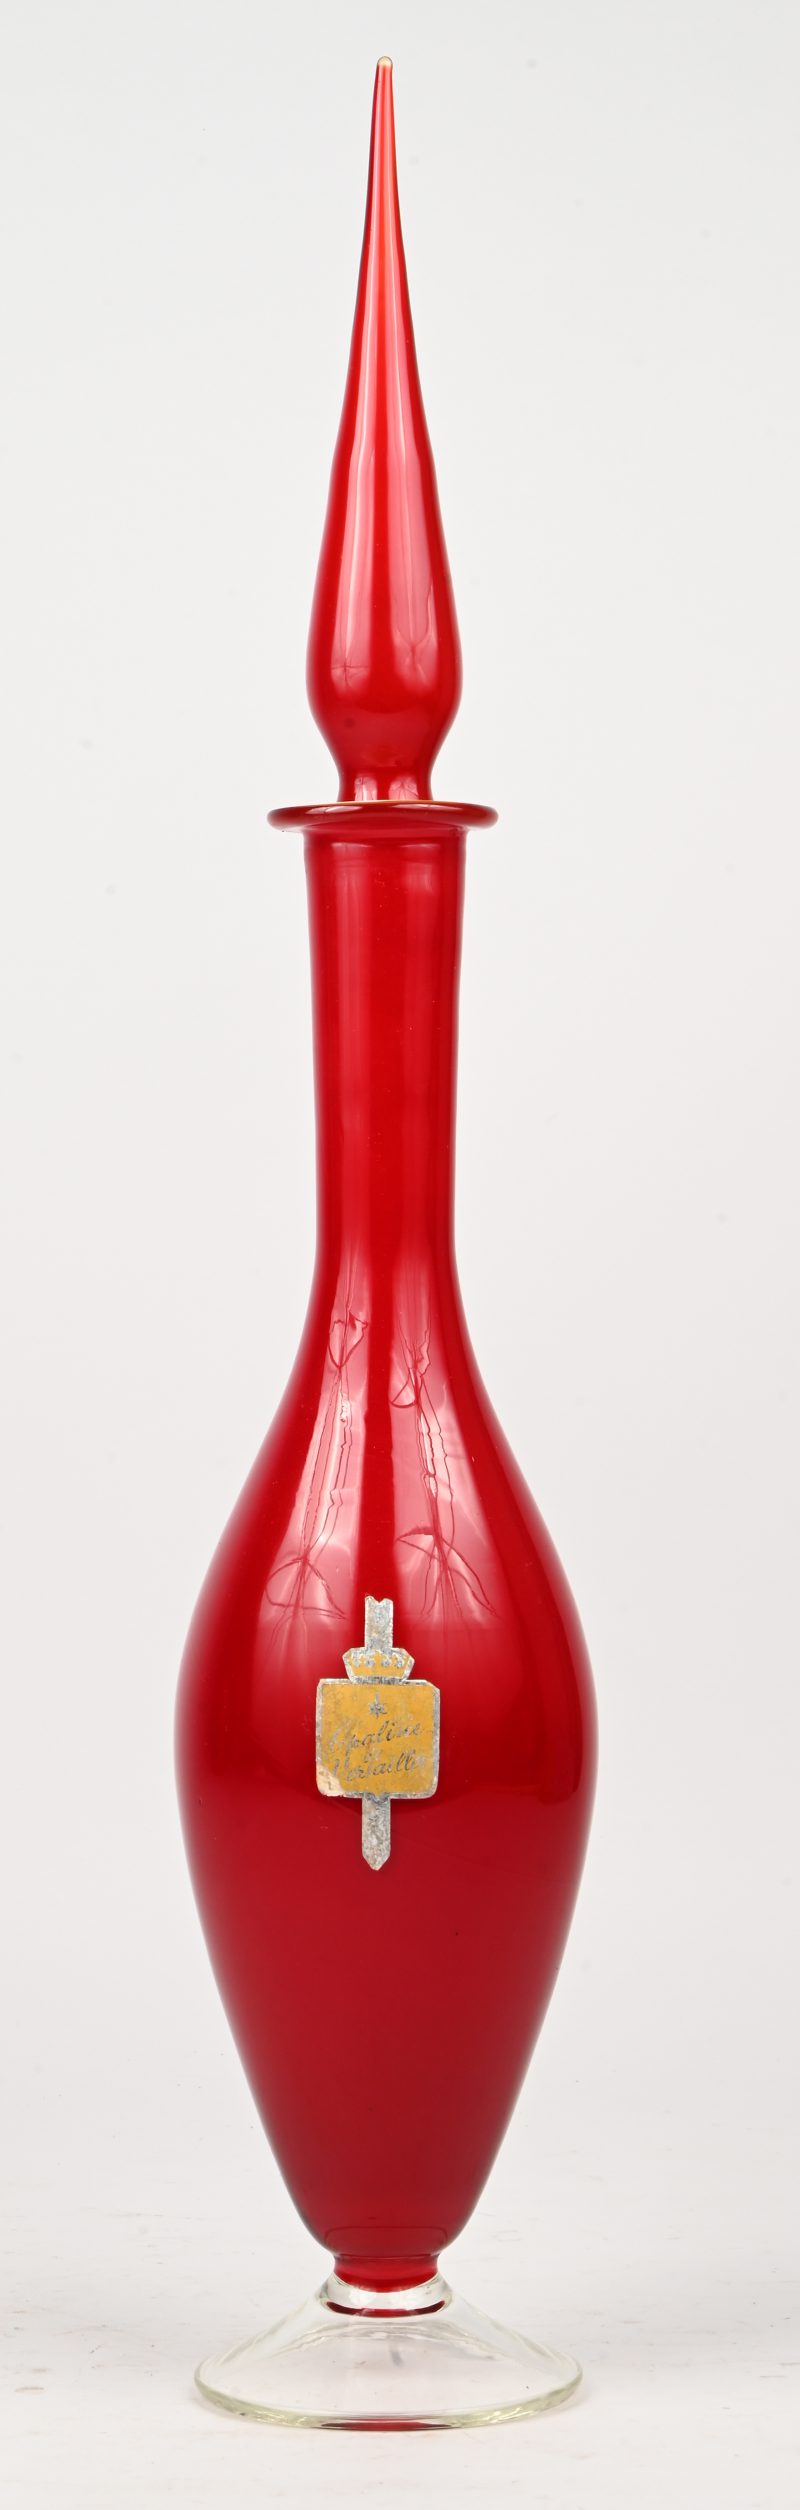 Een rode vintage opaline sierkaraf met sticker waarop vermeld ‘Opaline de Versailles’.